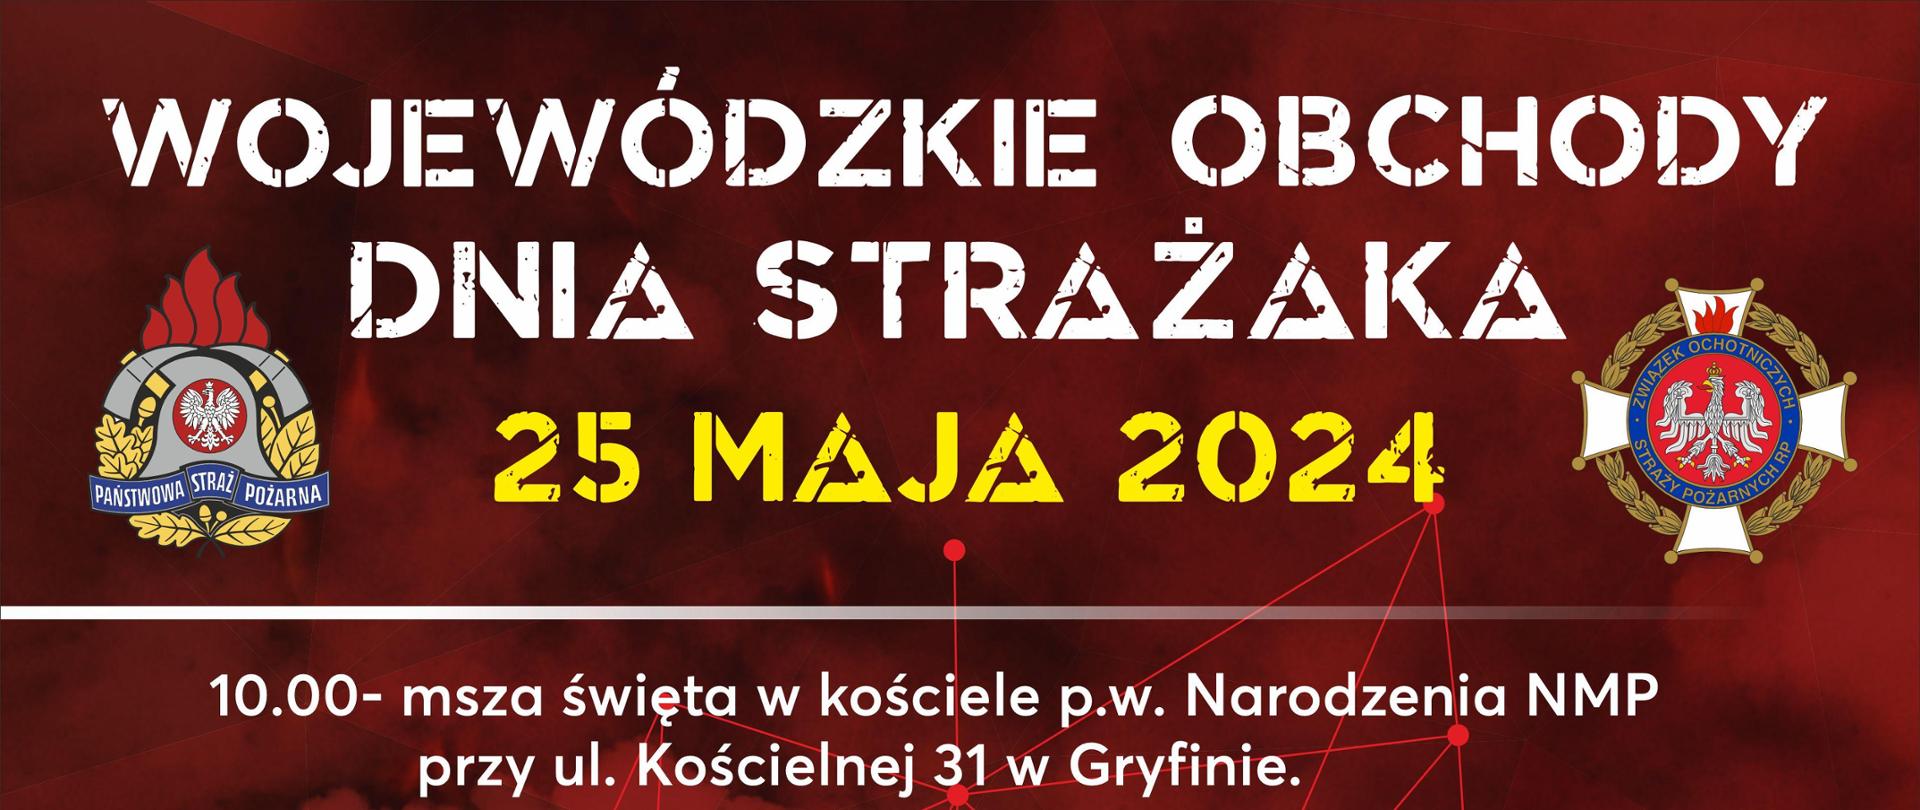 Plakat Wojewódzkie Obchody Dnia Strażaka 25 maja 2024